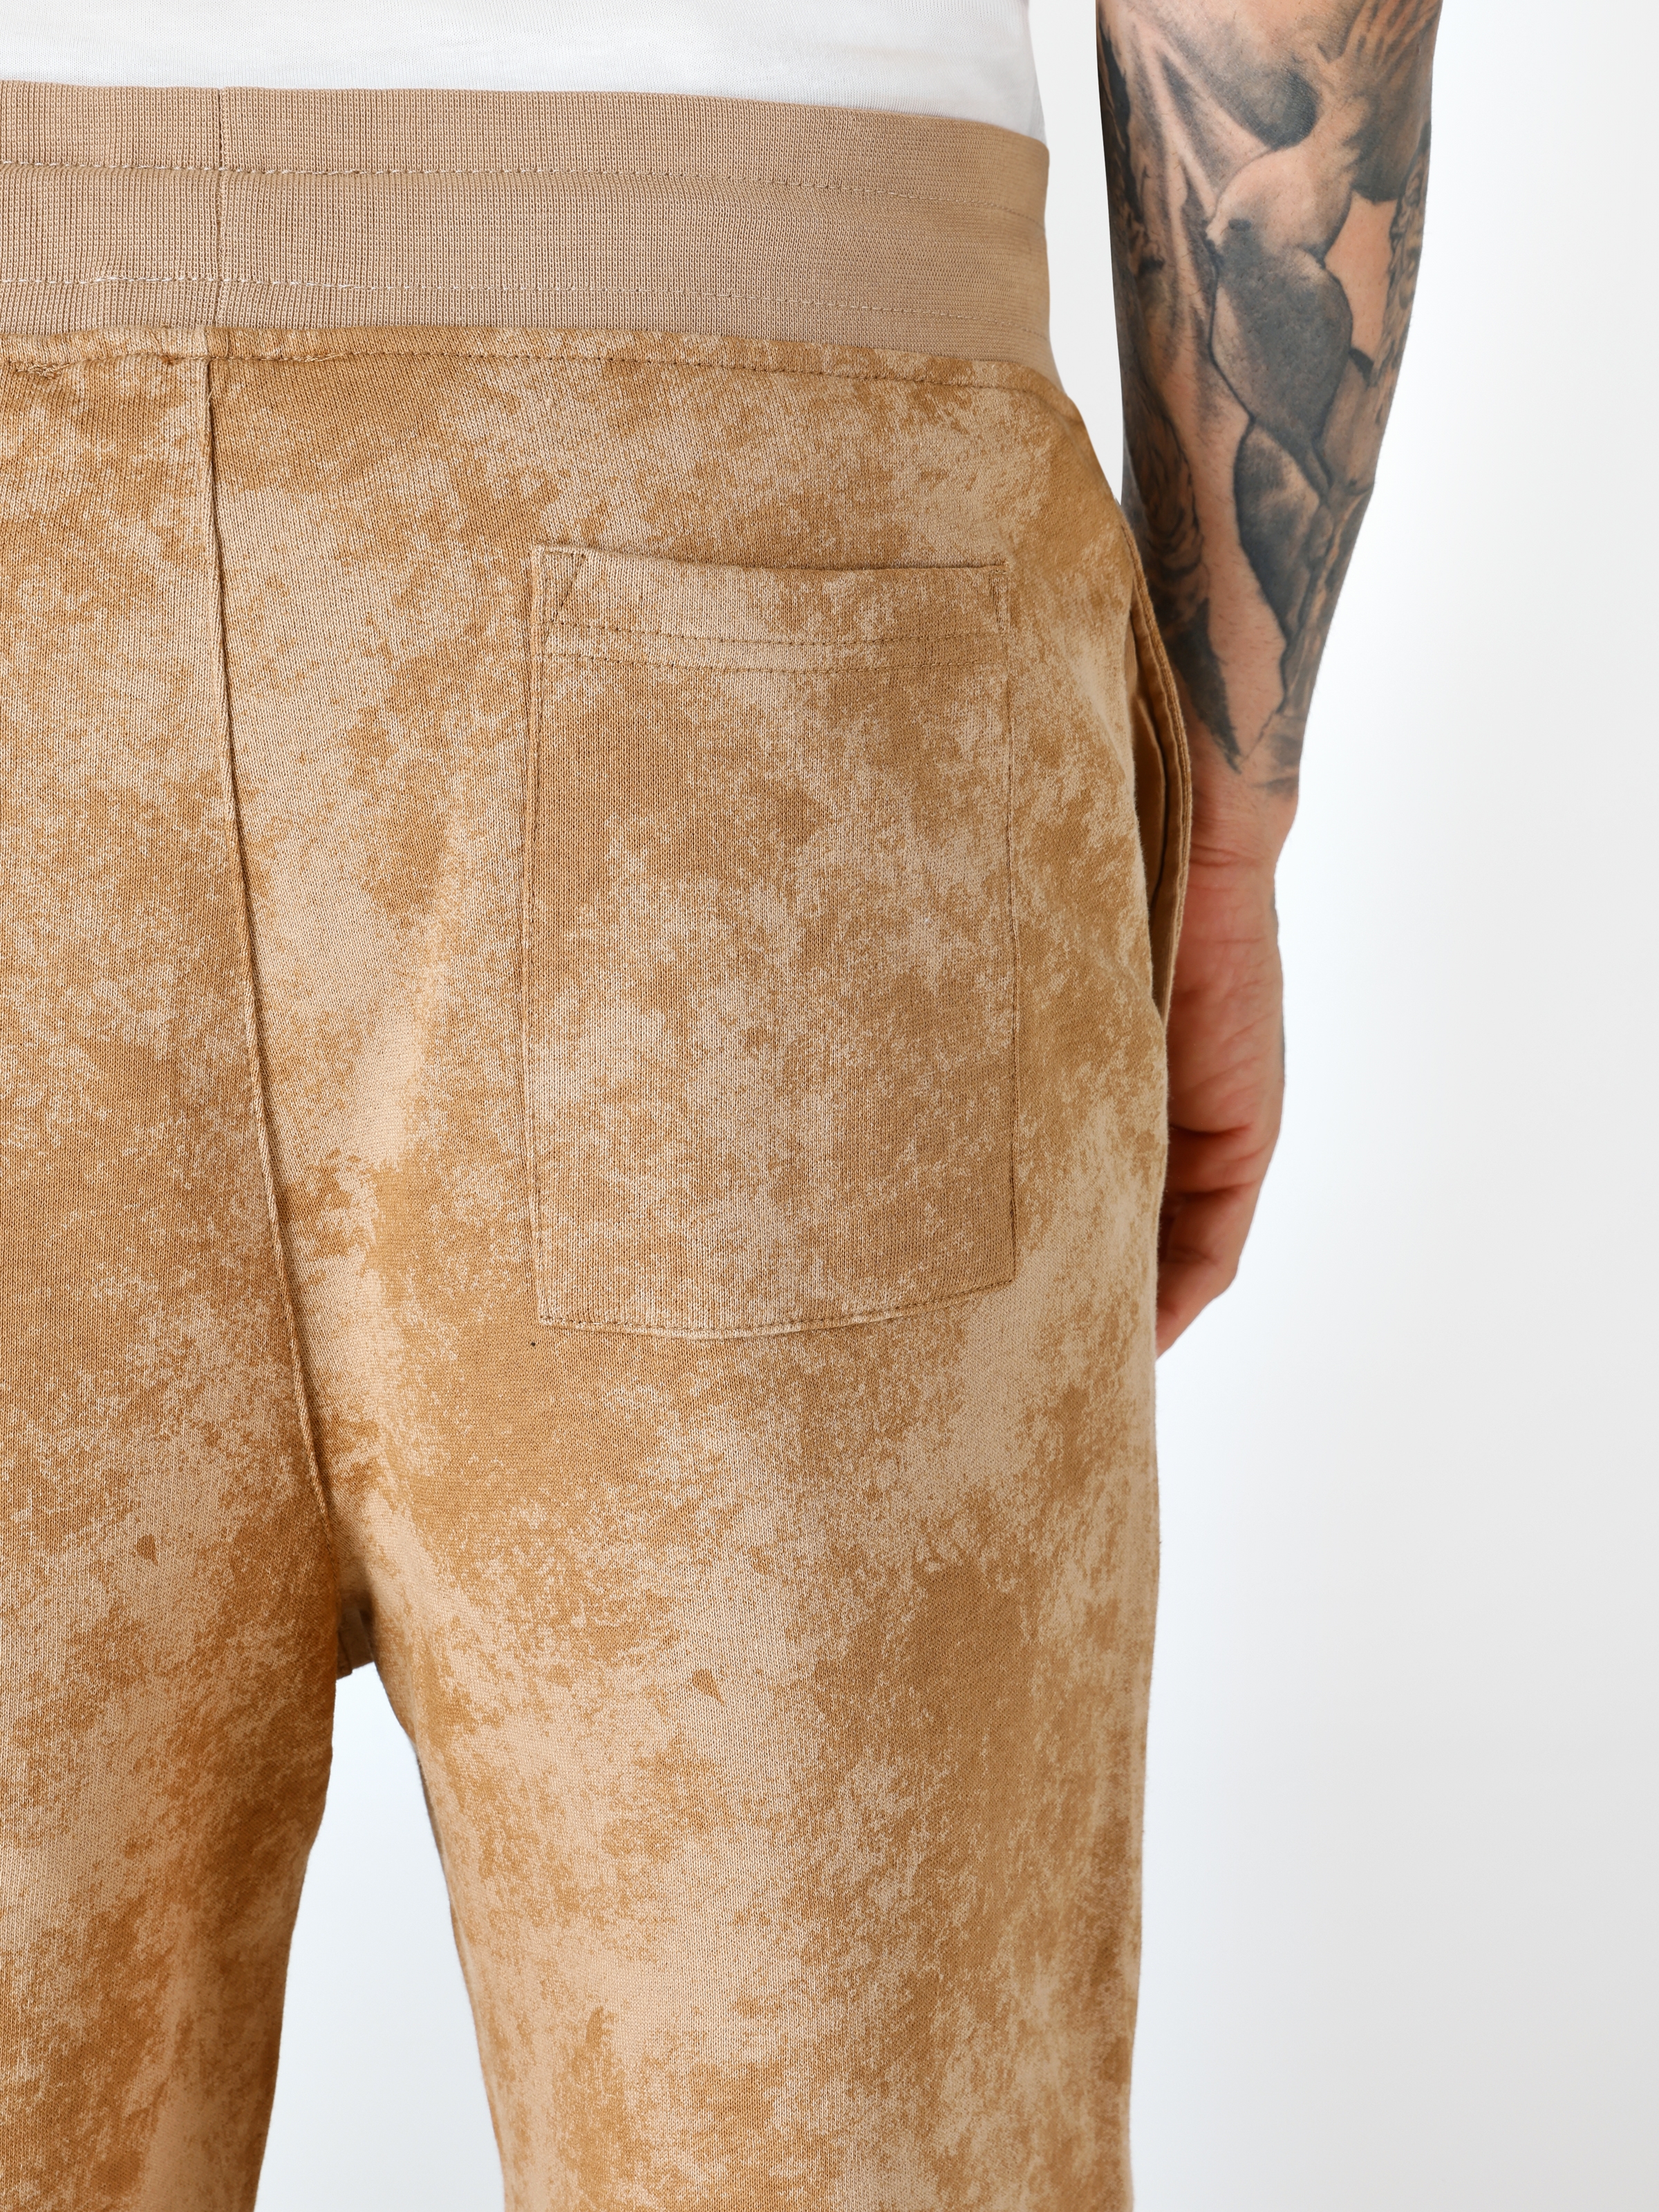 Afișați detalii pentru Short / Pantaloni Scurti De Barbati Maro Regular Fit  